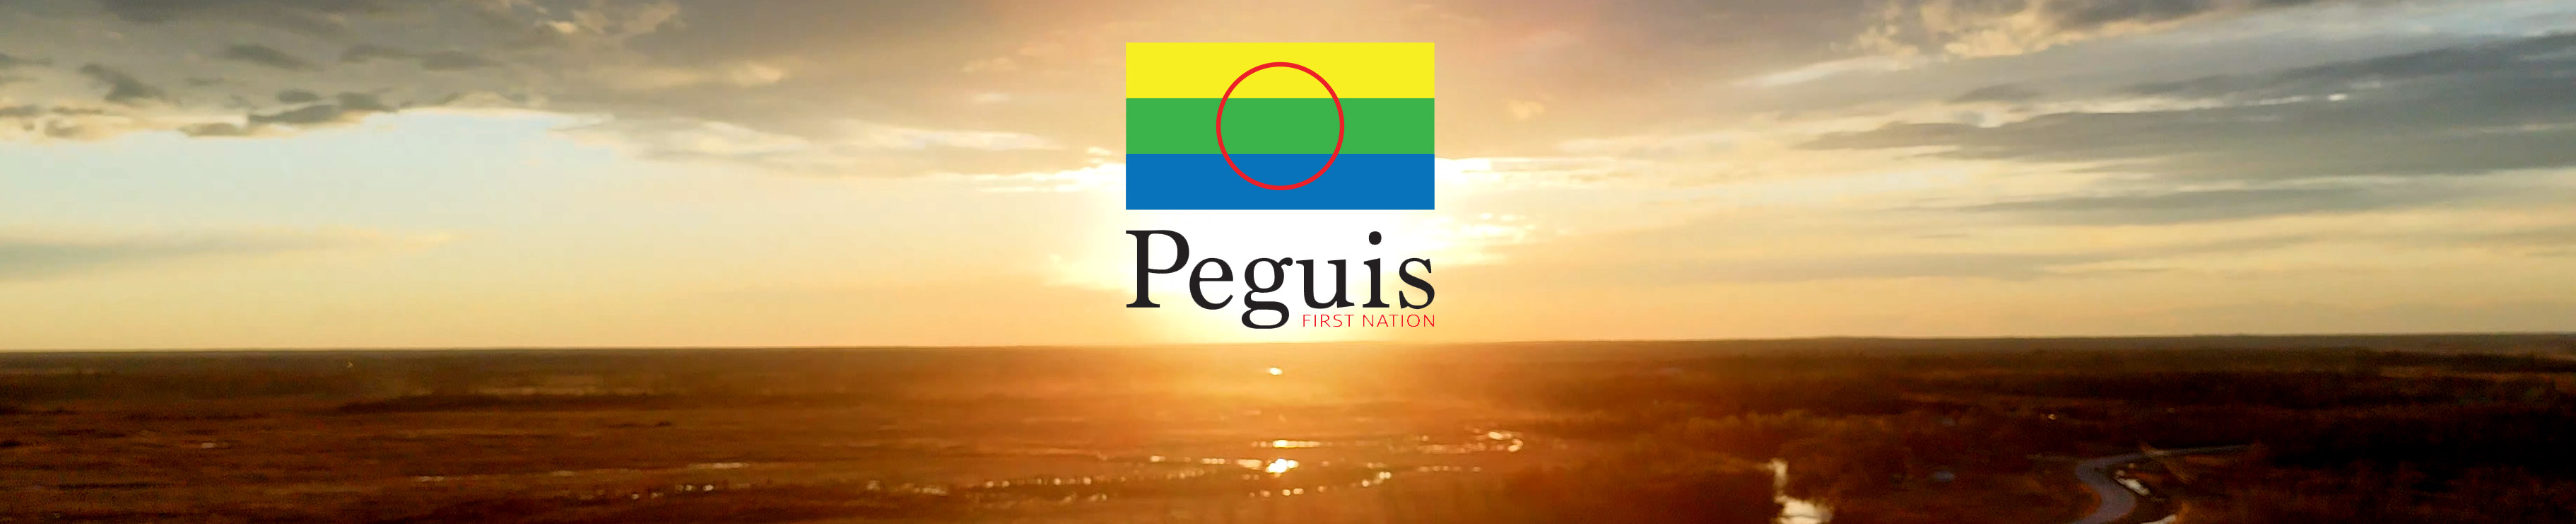 Peguis First Nation